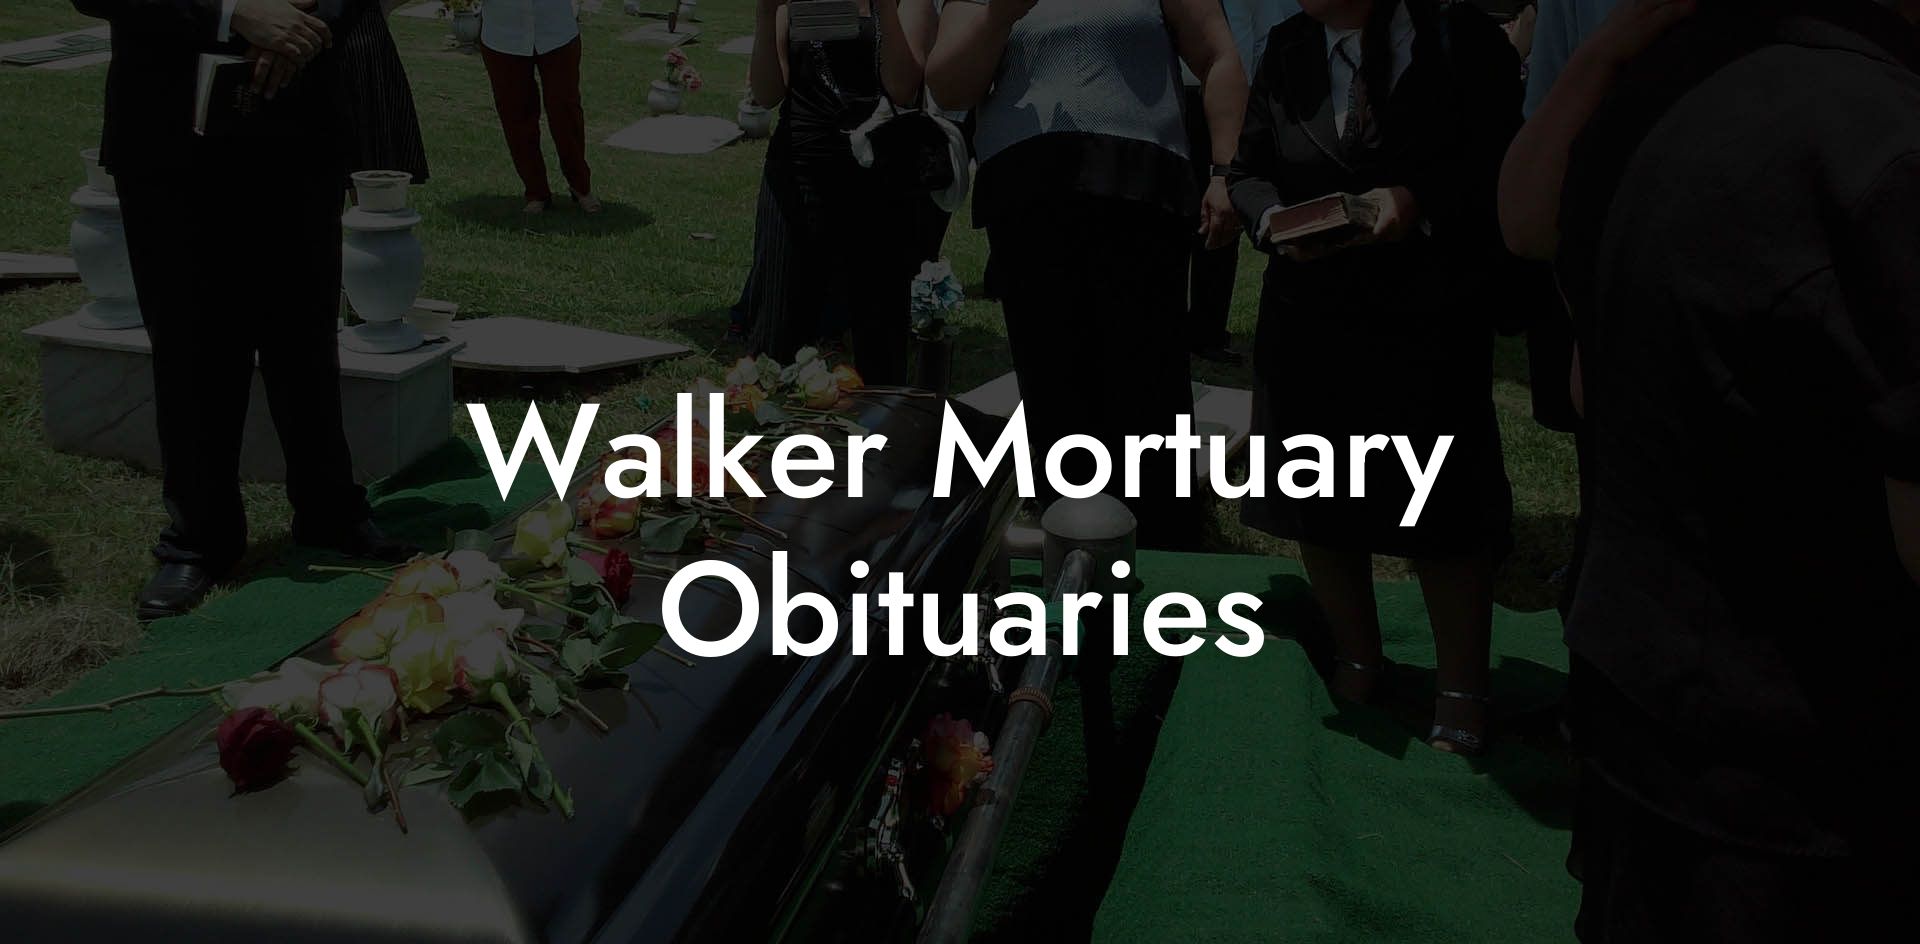 Walker Mortuary Obituaries